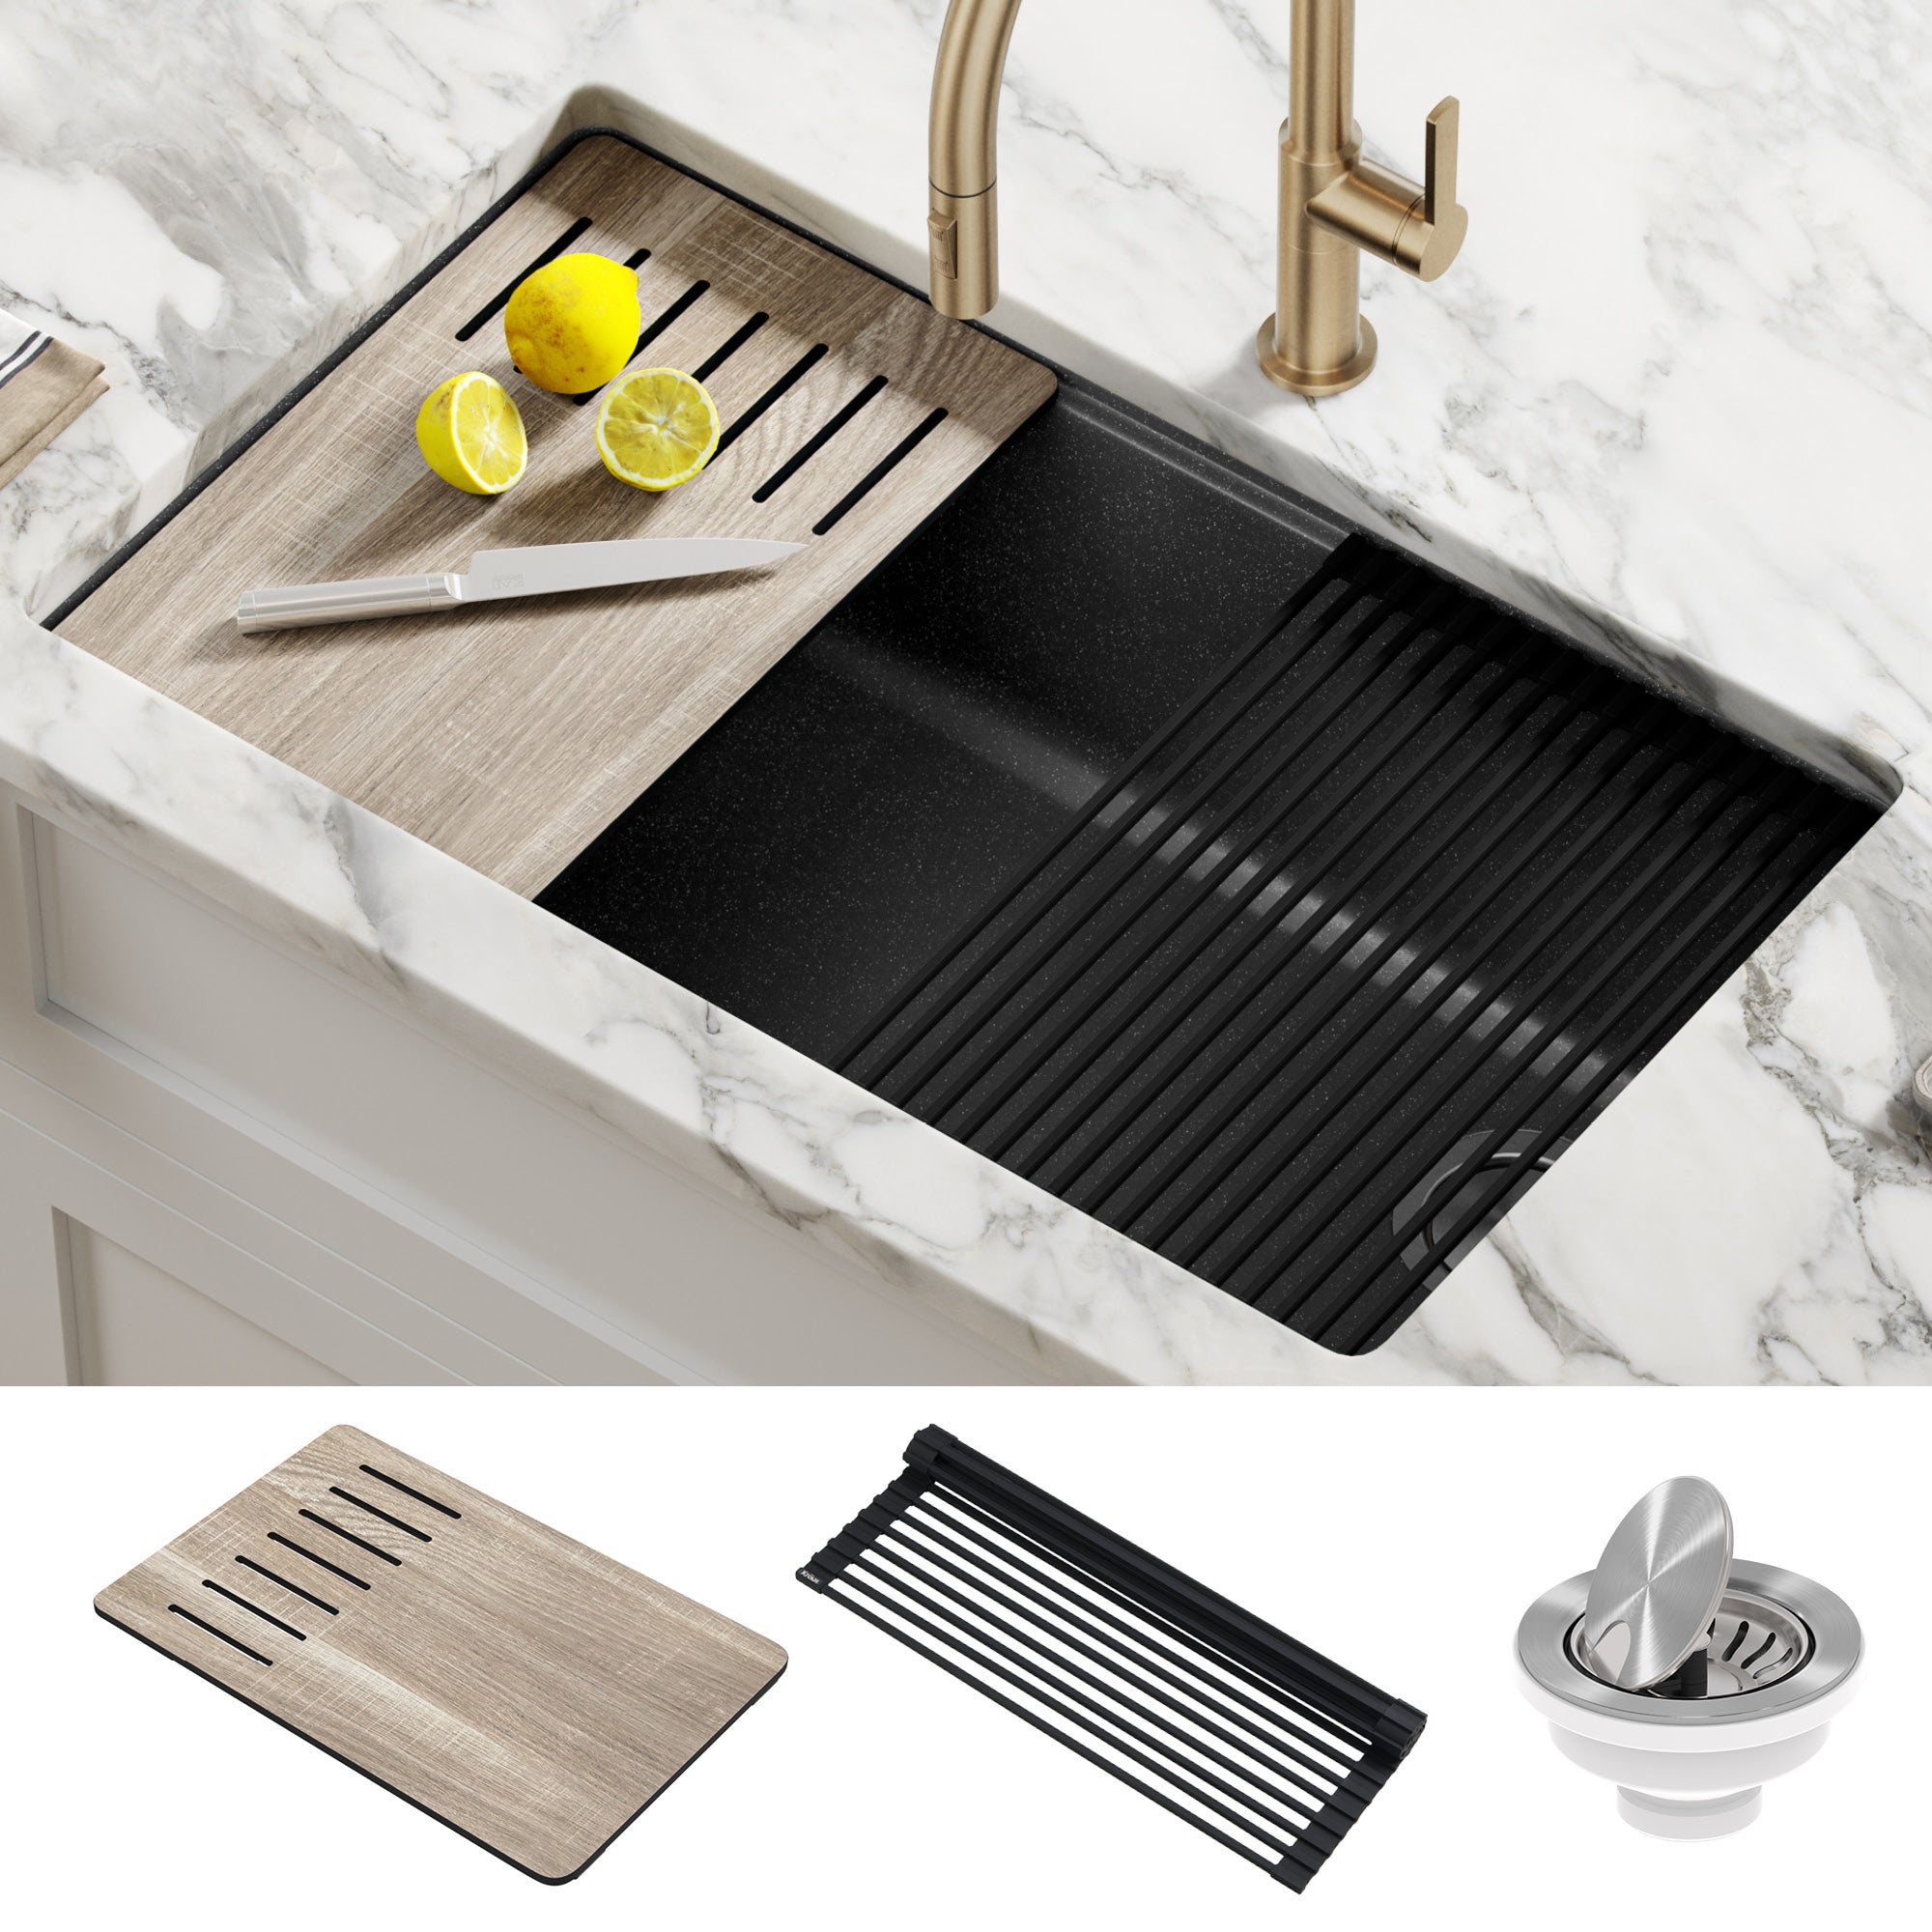 https://directsinks.com/cdn/shop/products/KRAUS-Bellucci-Workstation-33-Undermount-Granite-Composite-Kitchen-Sink-in-Metallic-Black-with-Accessories-2_2000x2000.jpg?v=1664276250